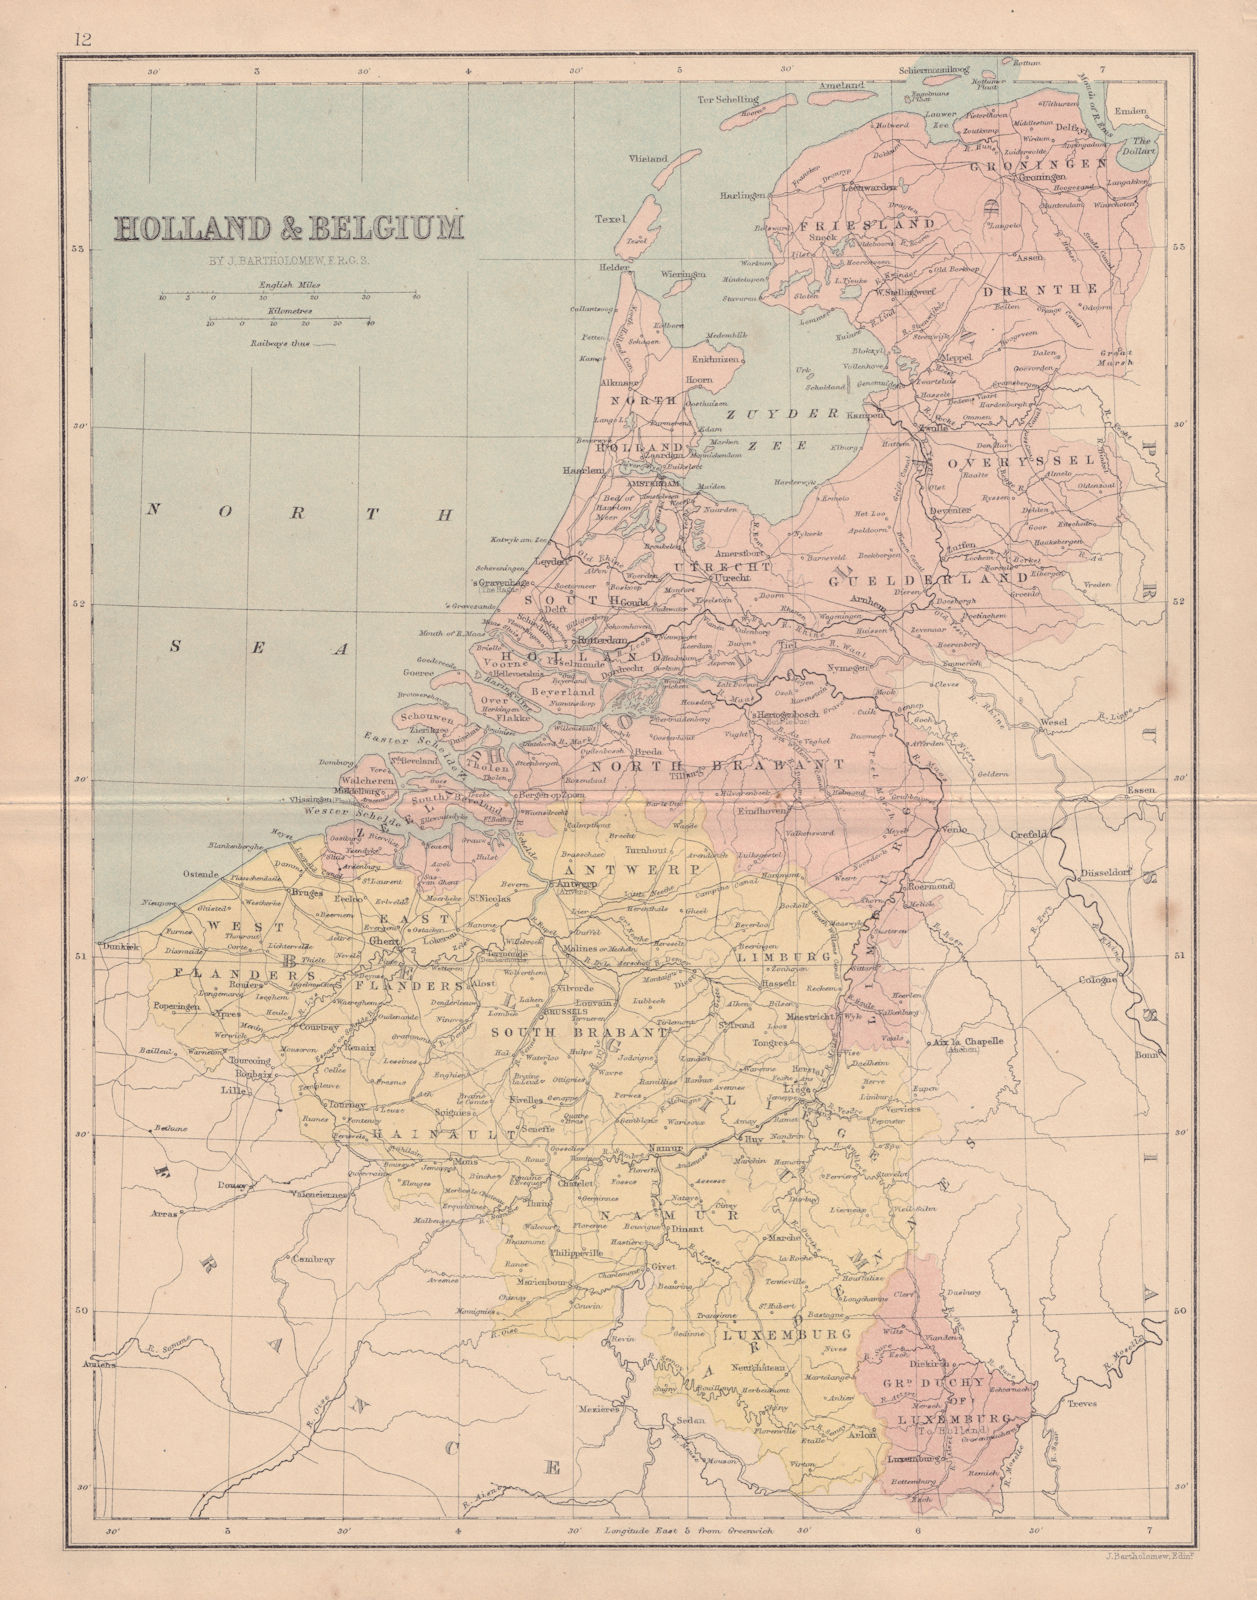 BENELUX. Netherlands before reclamation of Zuiderzee polders. COLLINS 1873 map